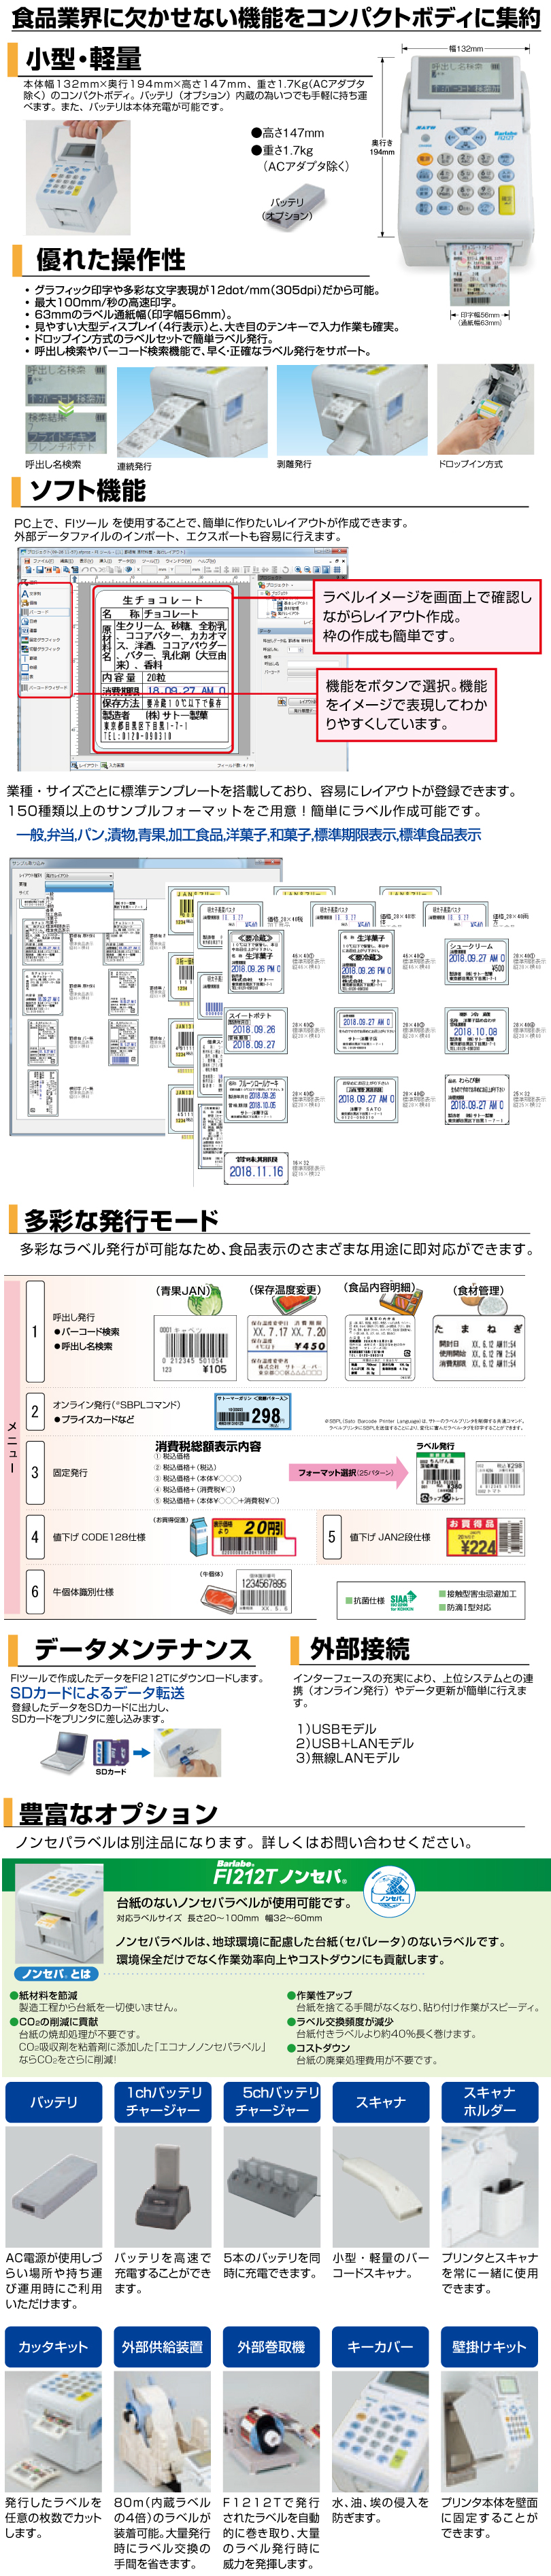 日本機器通販 / サトー バーラベ FI212T標準USB仕様 【別モデル(FX3-LX)をご検討下さい】